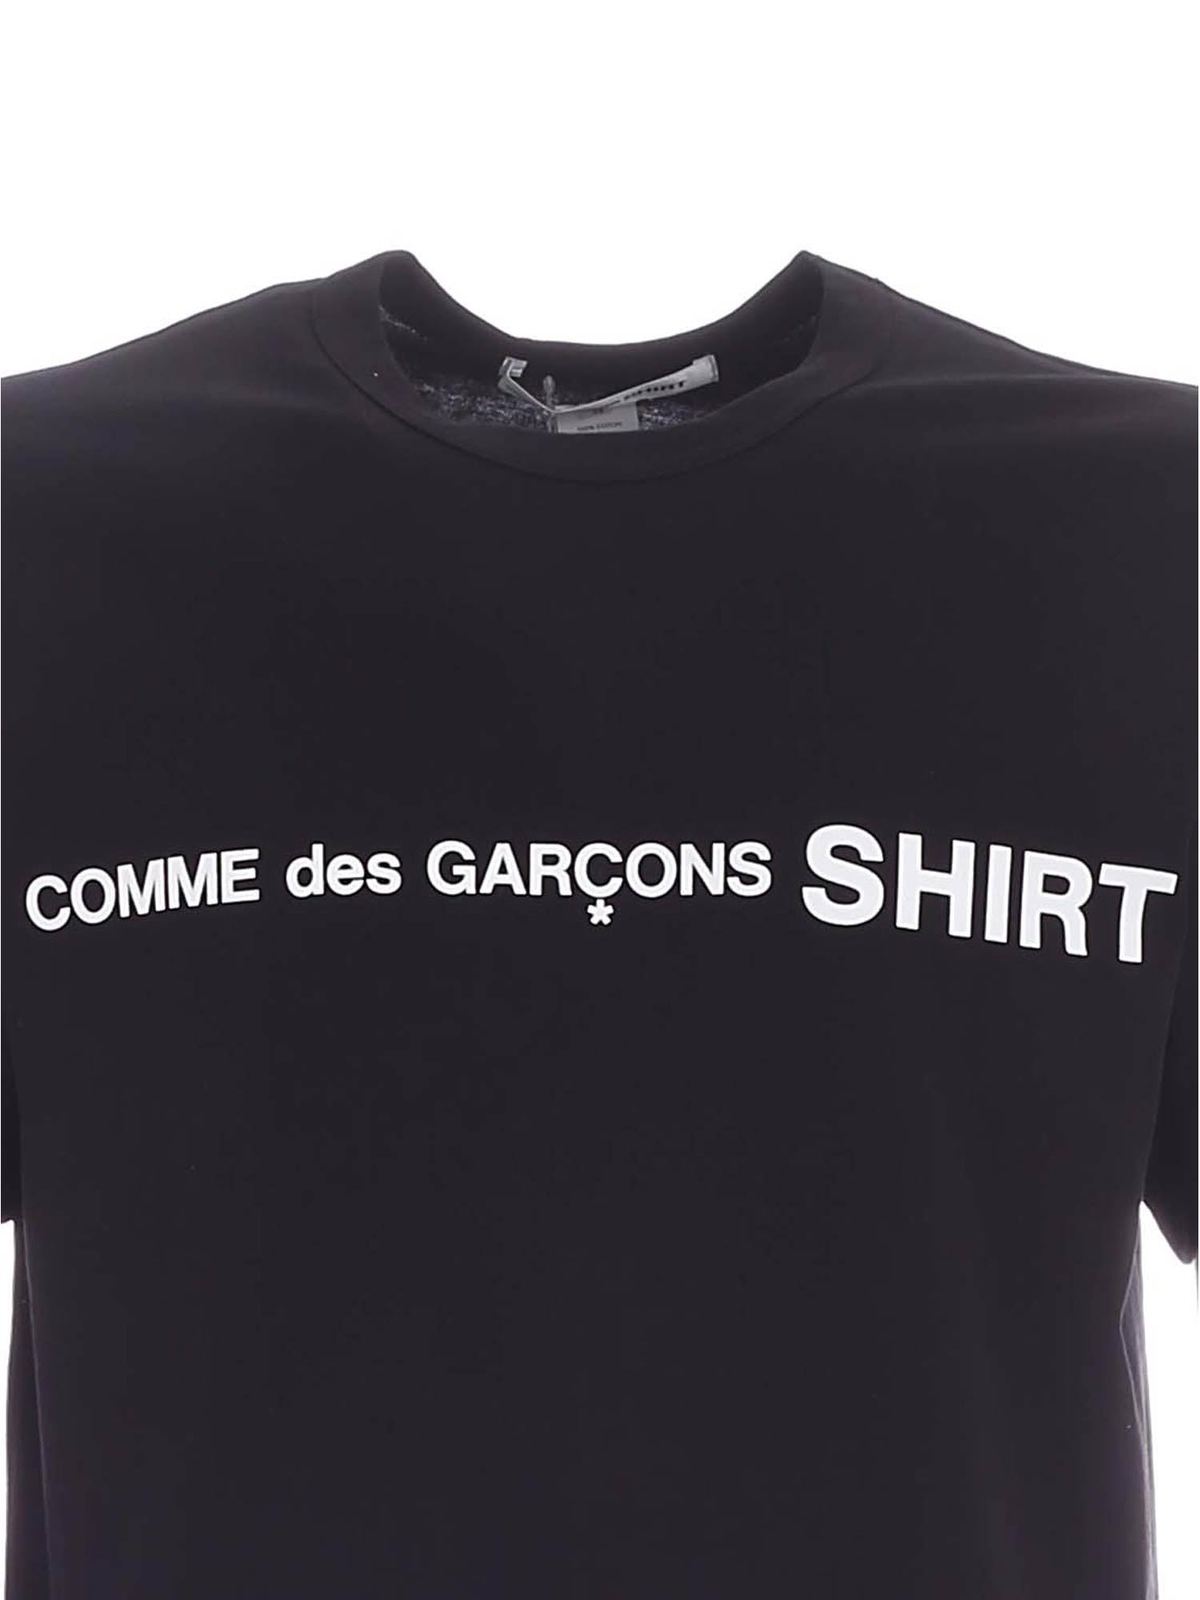 COMME des GARCONS SHIRT アートシャツ